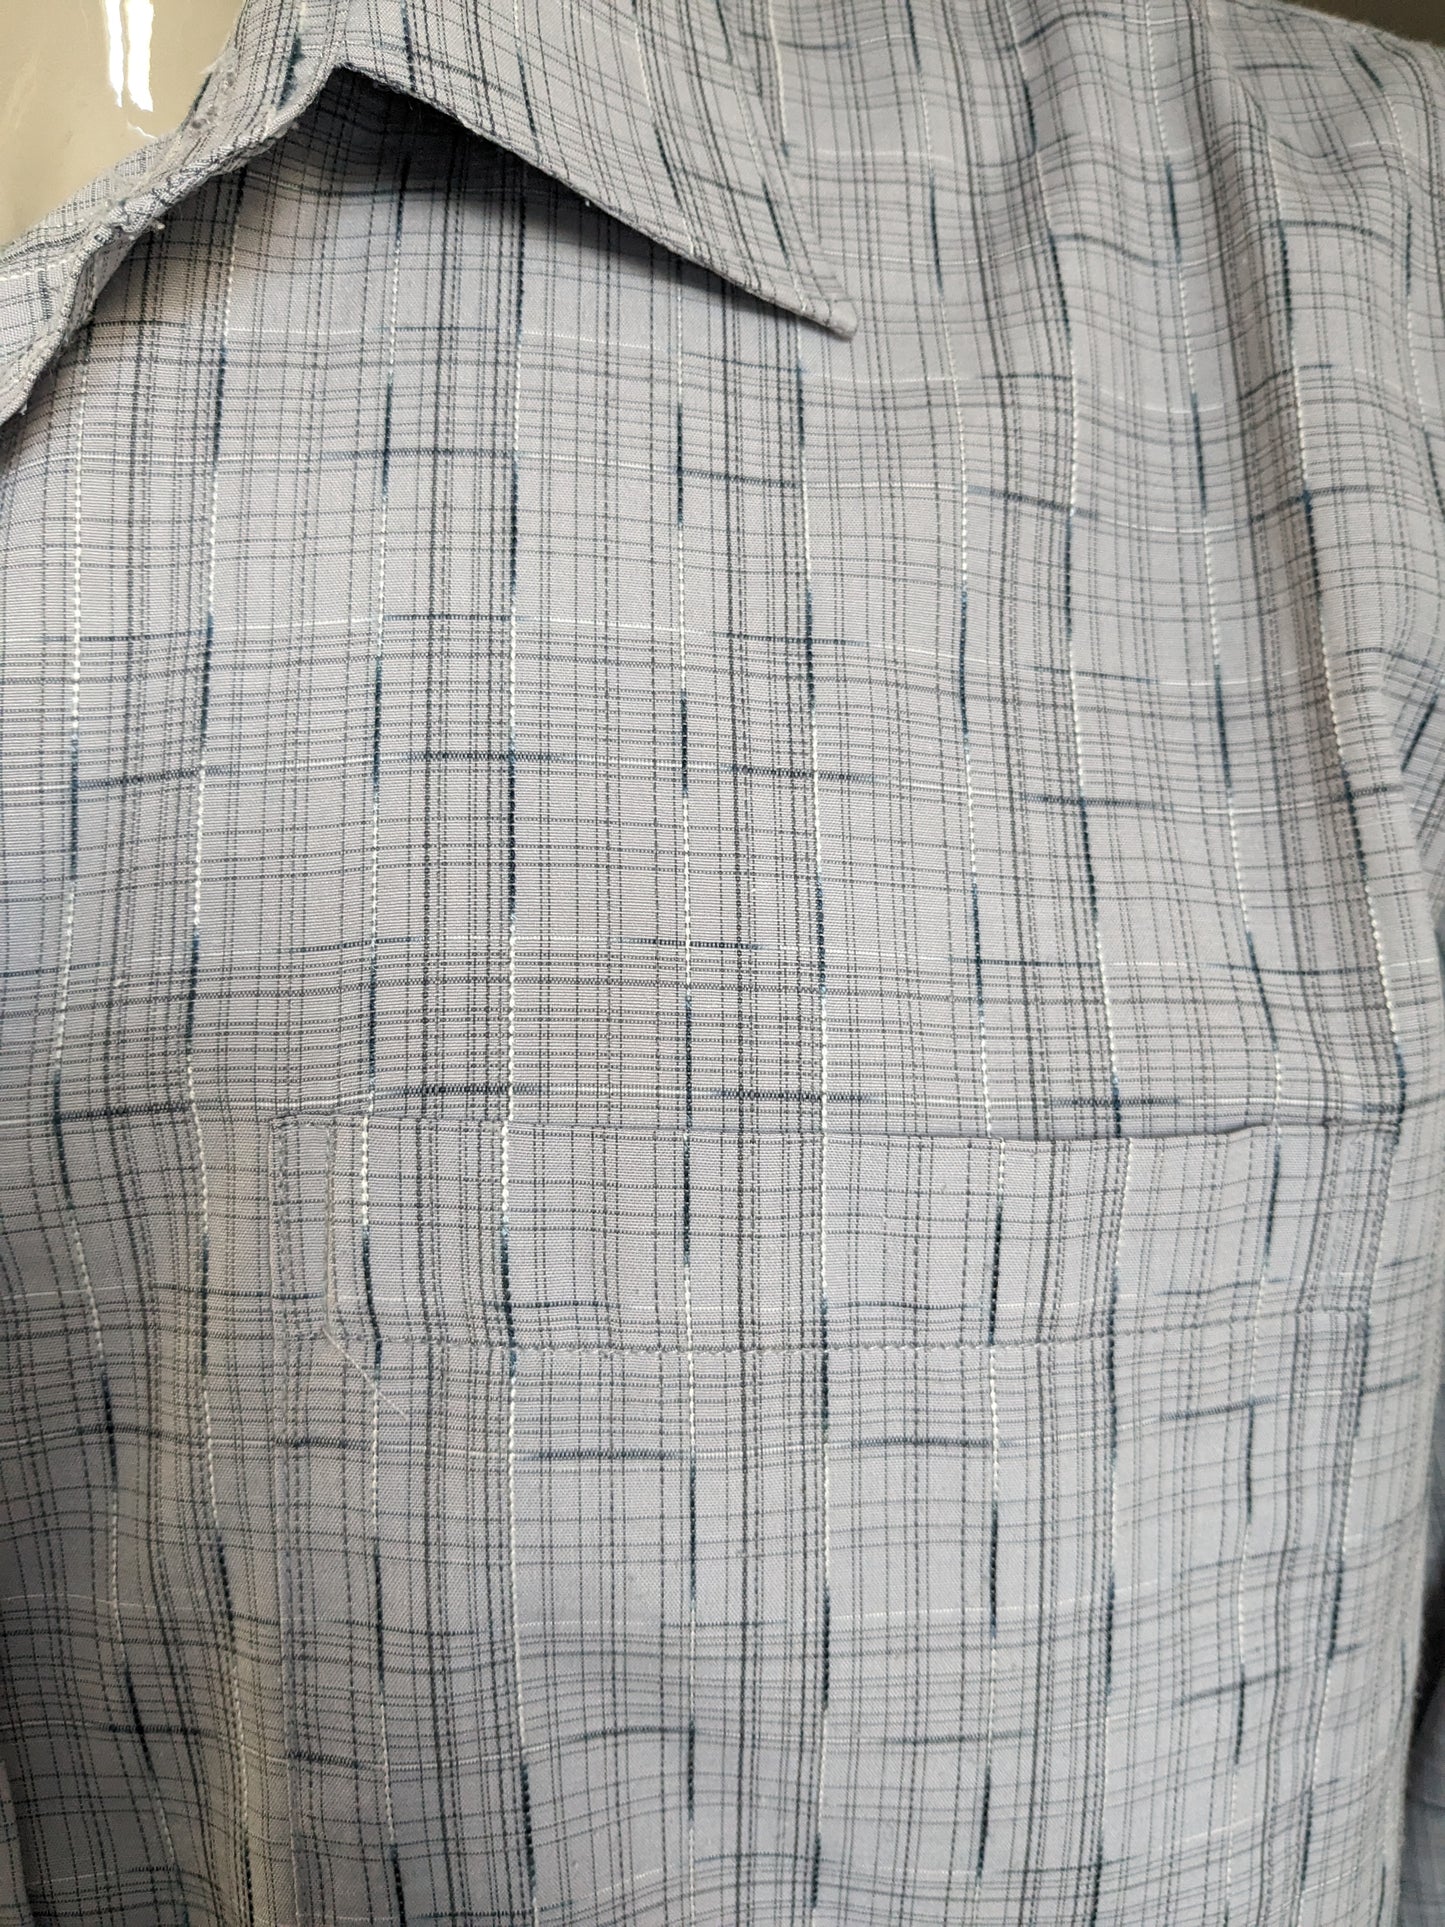 Camisa de Huiman. Motivo gris. Tamaño 45/46 >> 2xl / xxl.